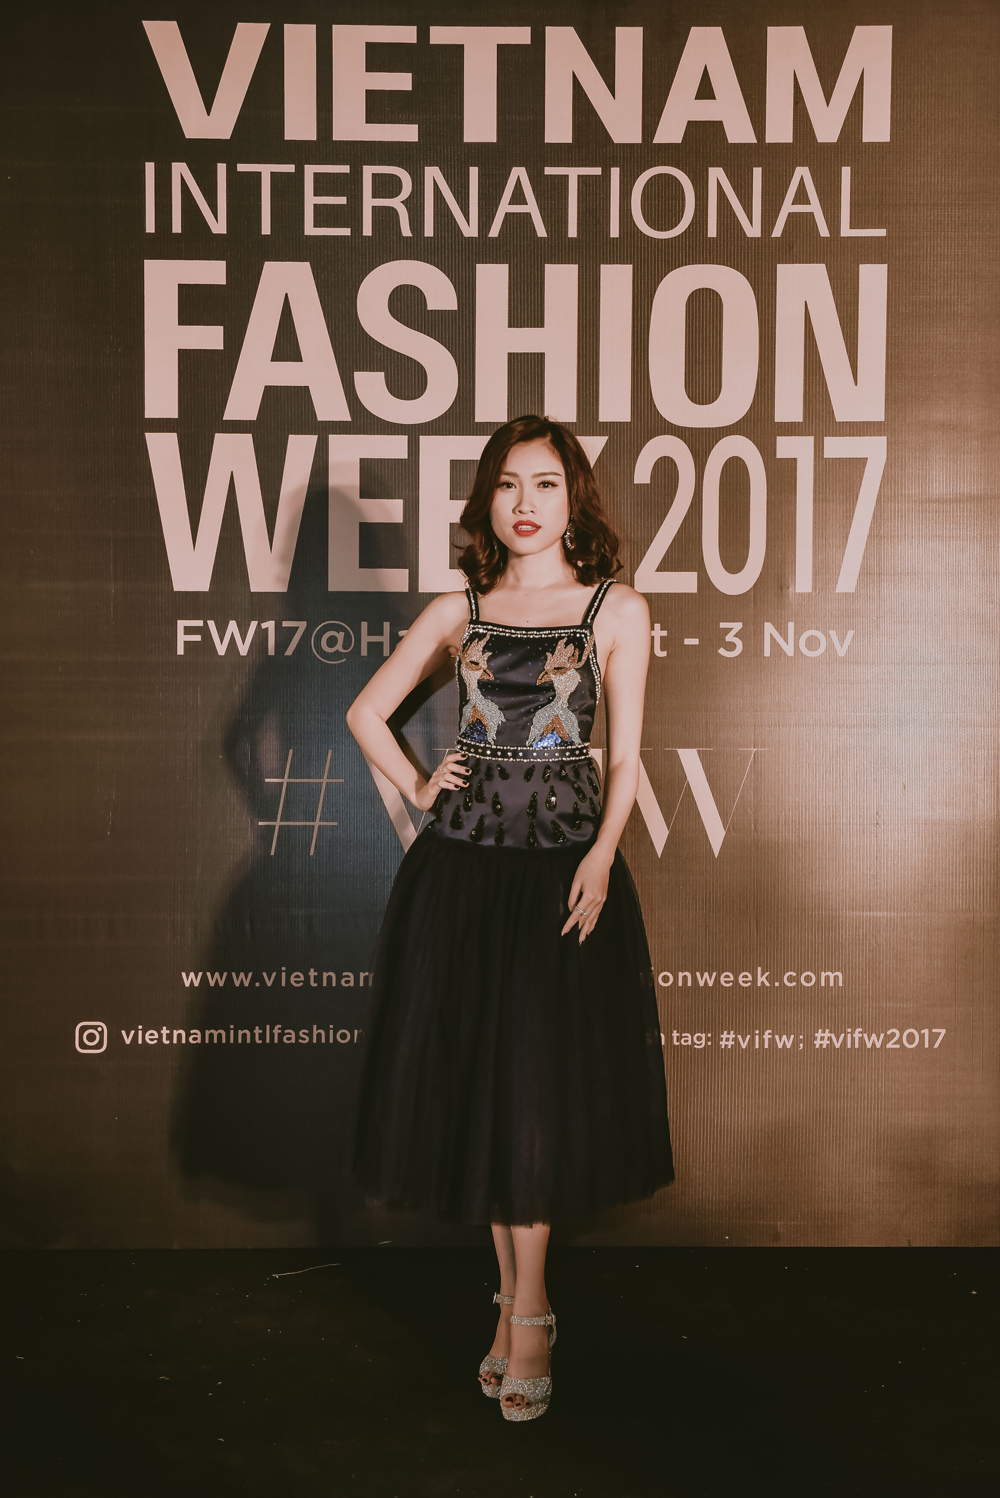 Đồng thời, cô cũng ghi dấu án qua các buổi biểu diễn thời trang của các nhà thiết kế hàng đầu như: NTK Đỗ Mạnh Cường, Chung Thanh Phong, Trương Thanh Hải, Phan Anh Tuấn...